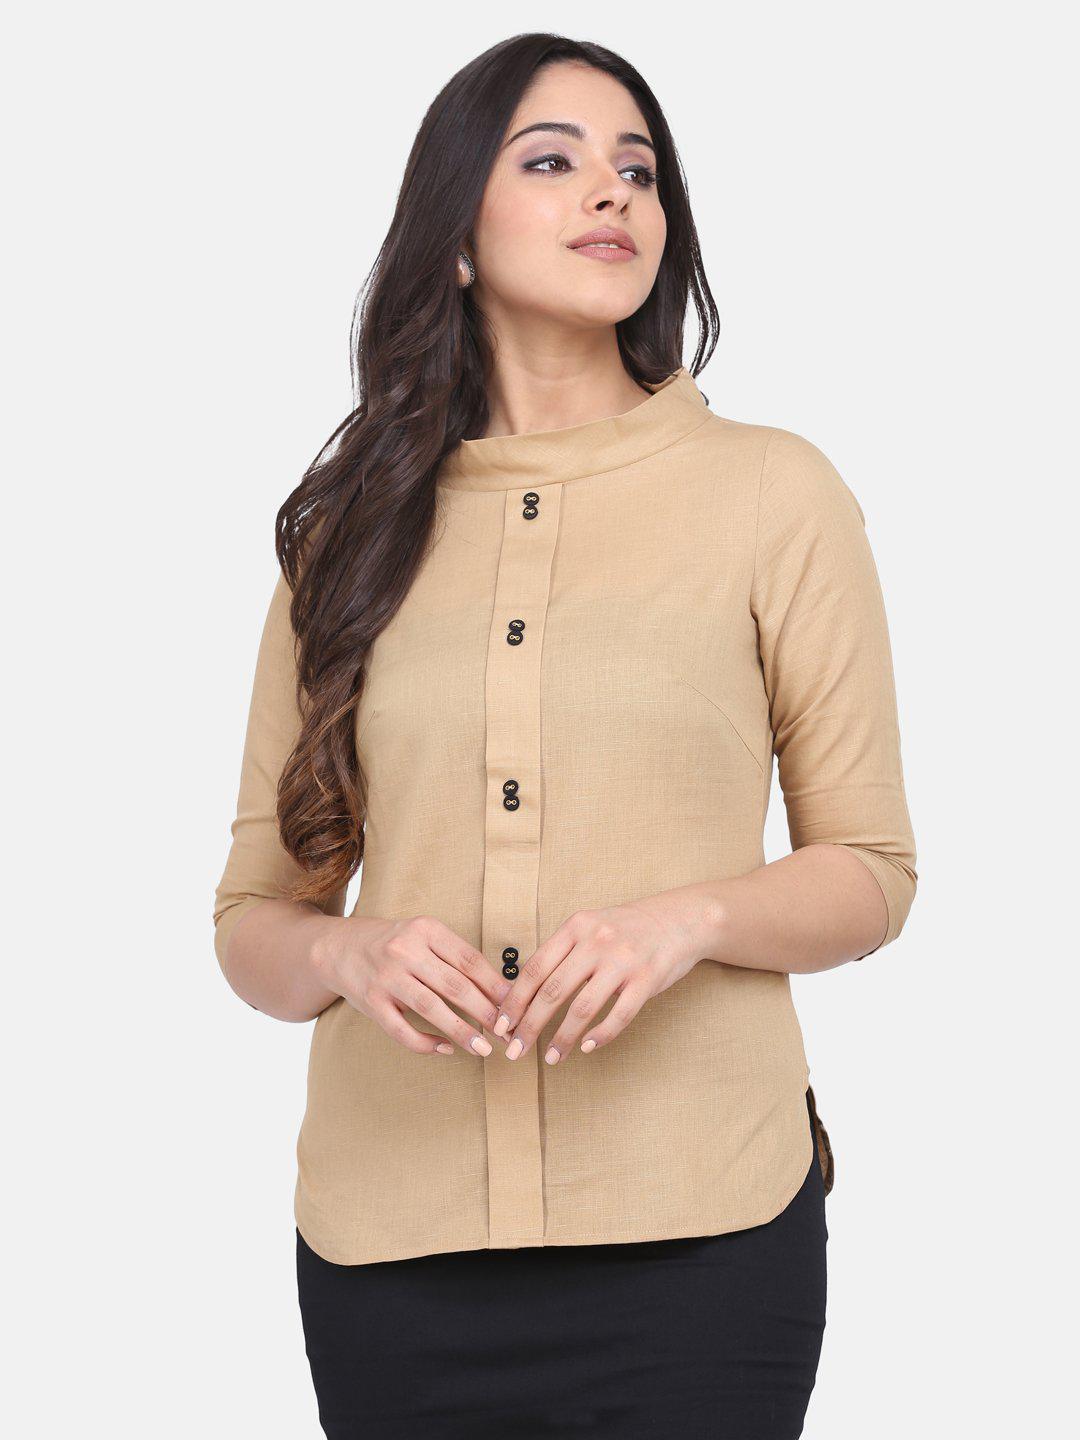 Round Collar Cotton Top For Women - Beige